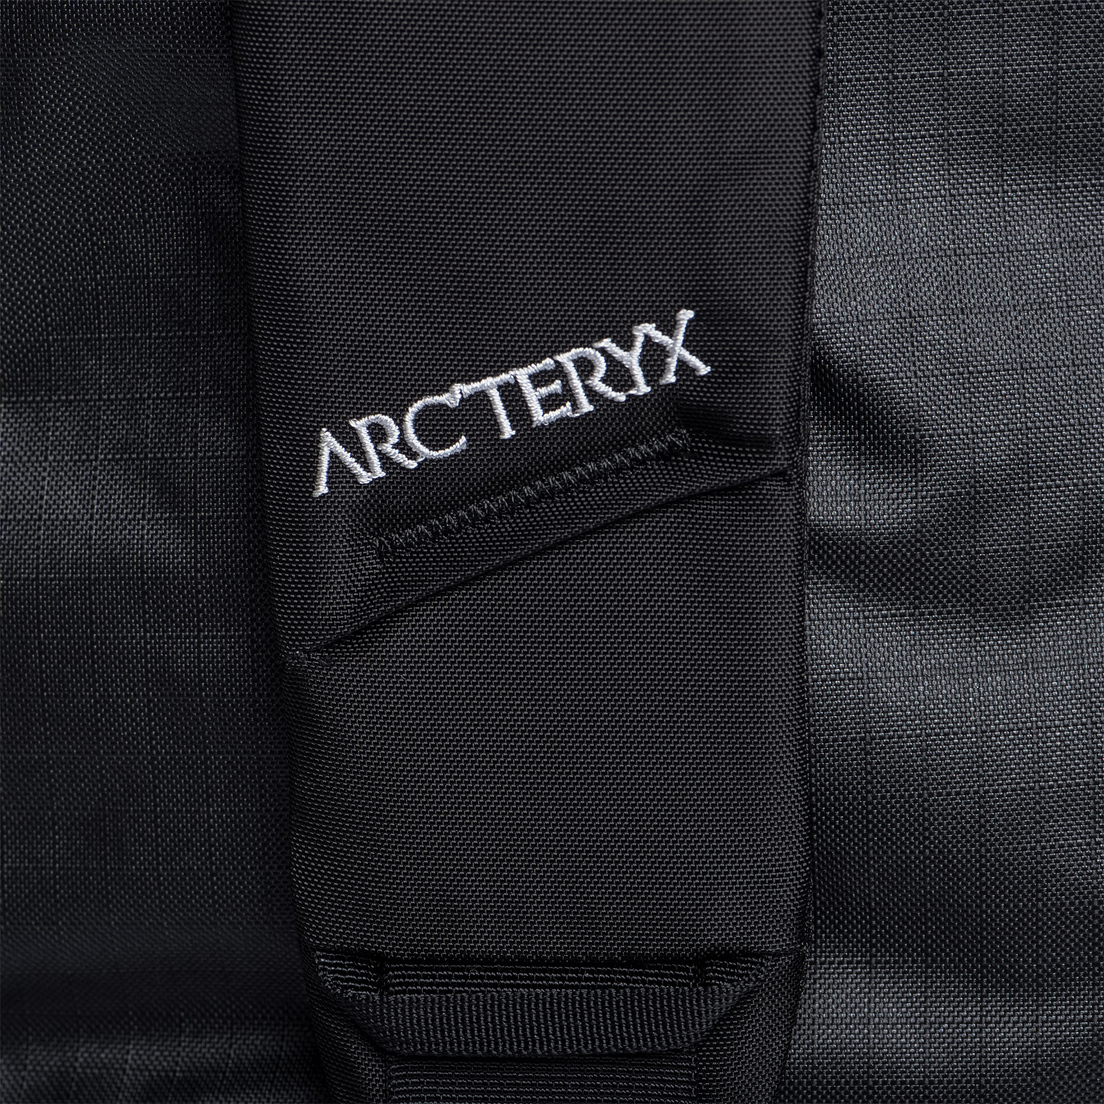 Arcteryx Дорожная сумка Carrier Duffel 80